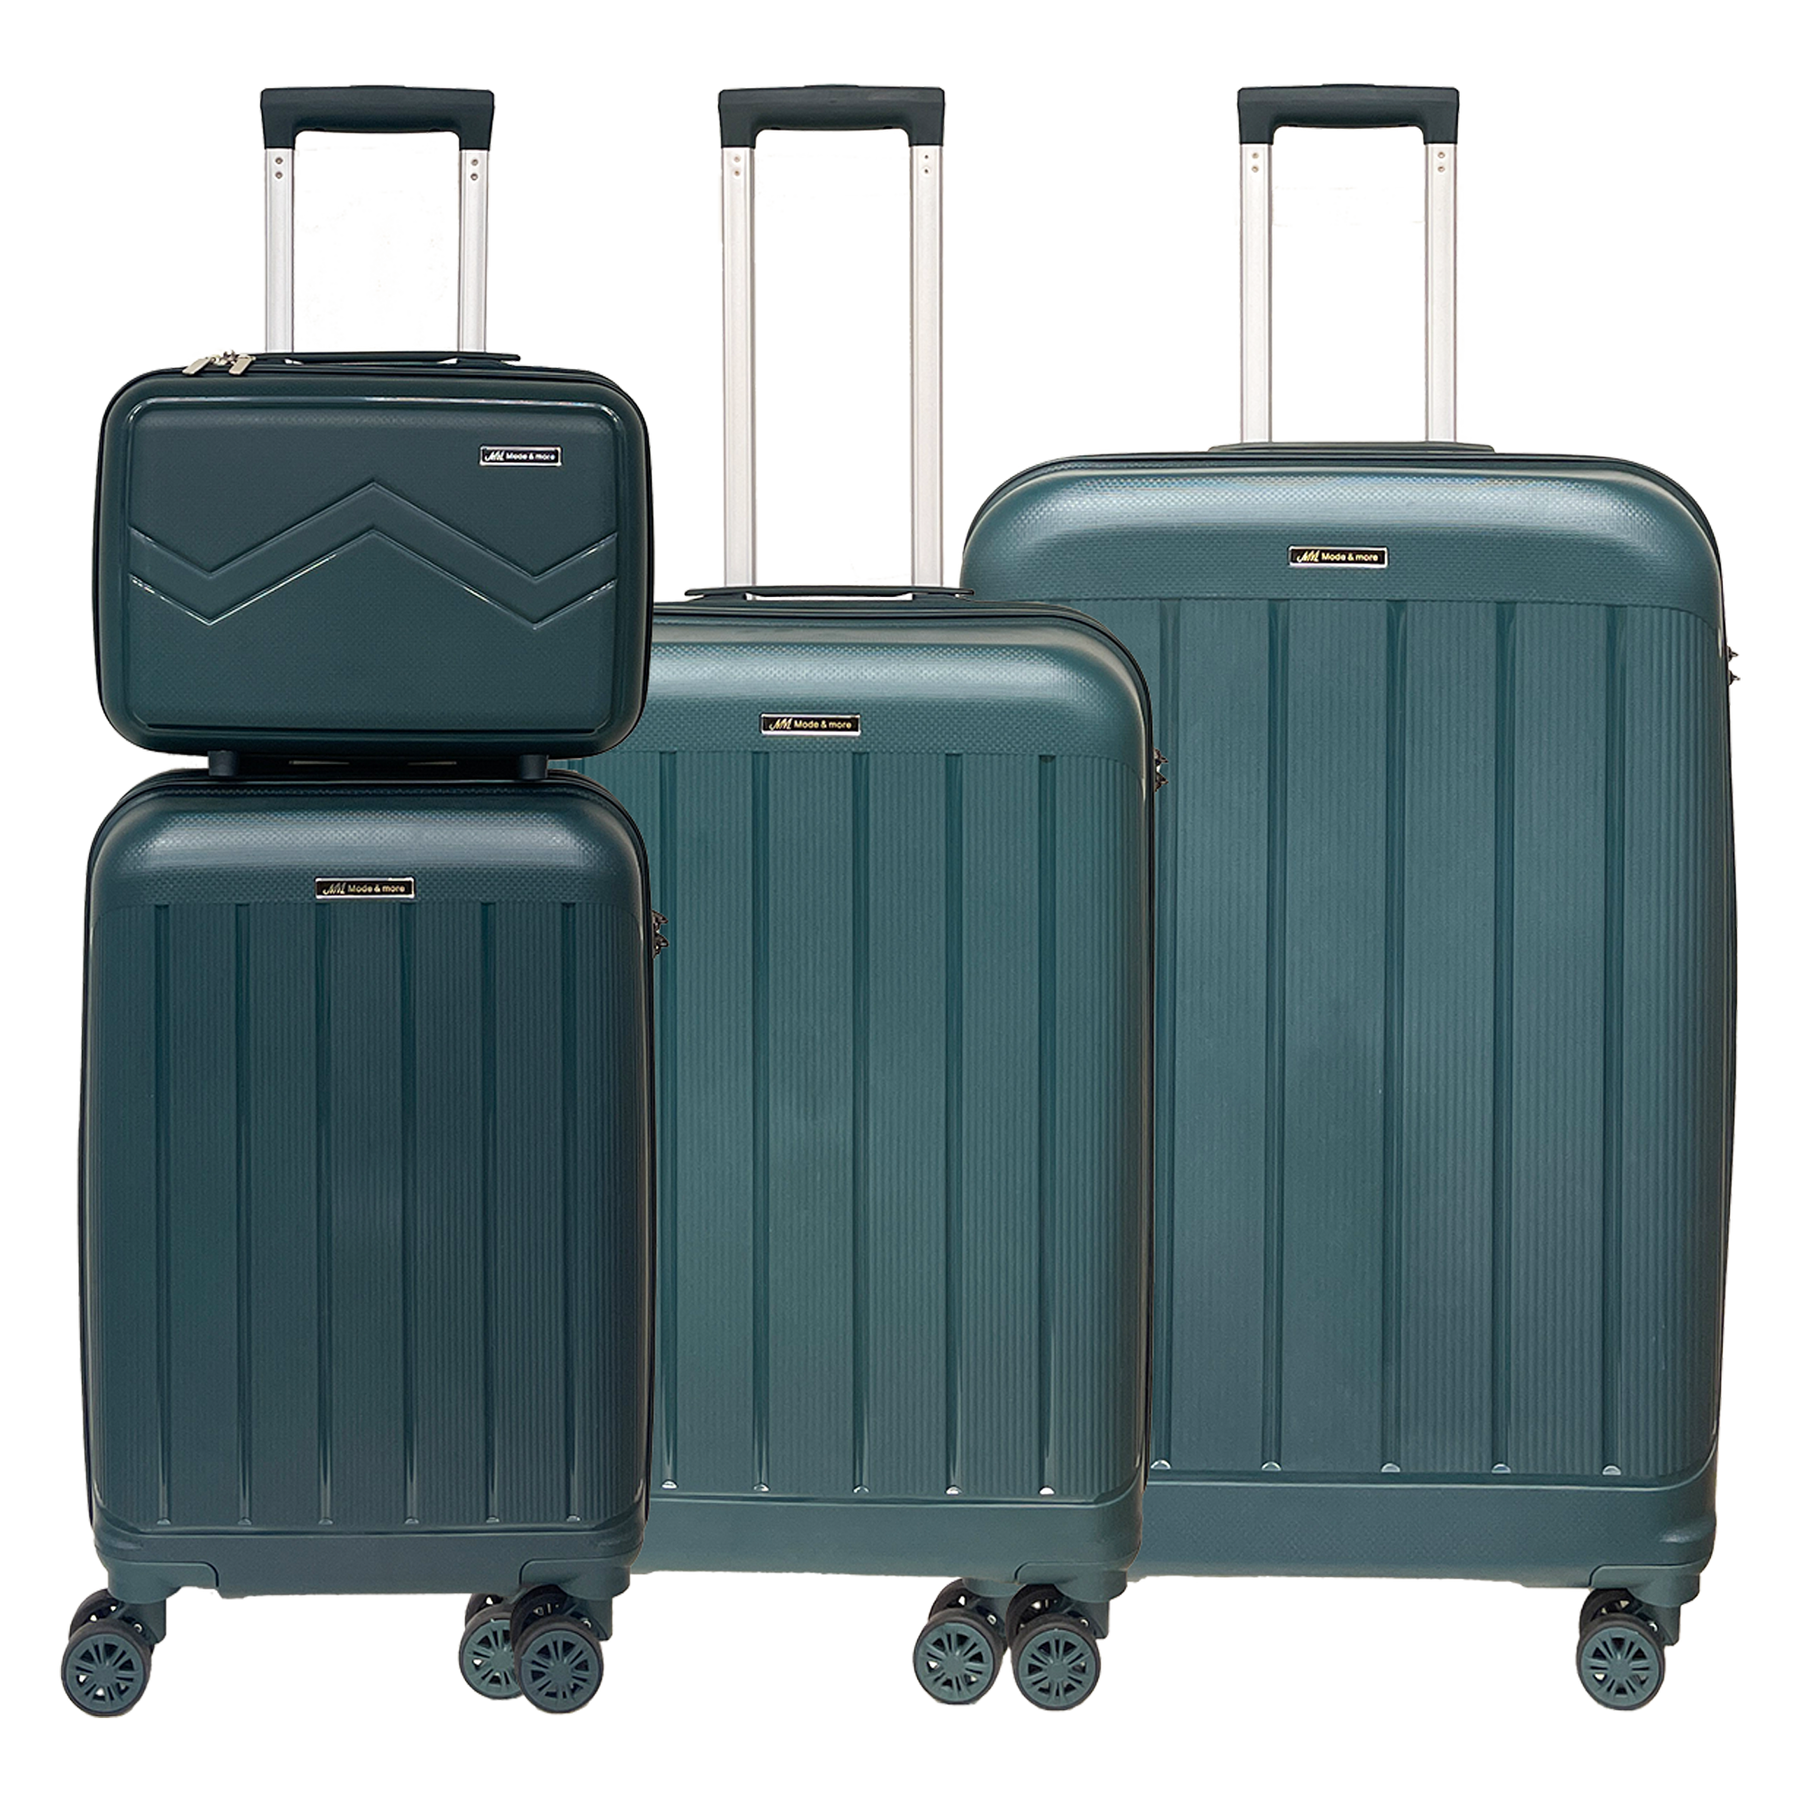 4-teiliges Kofferset aus leichtem, weichem Polypropylen mit TSA-Schloss - Hochwertiger, superleichter Trolley mit Kosmetikkoffer